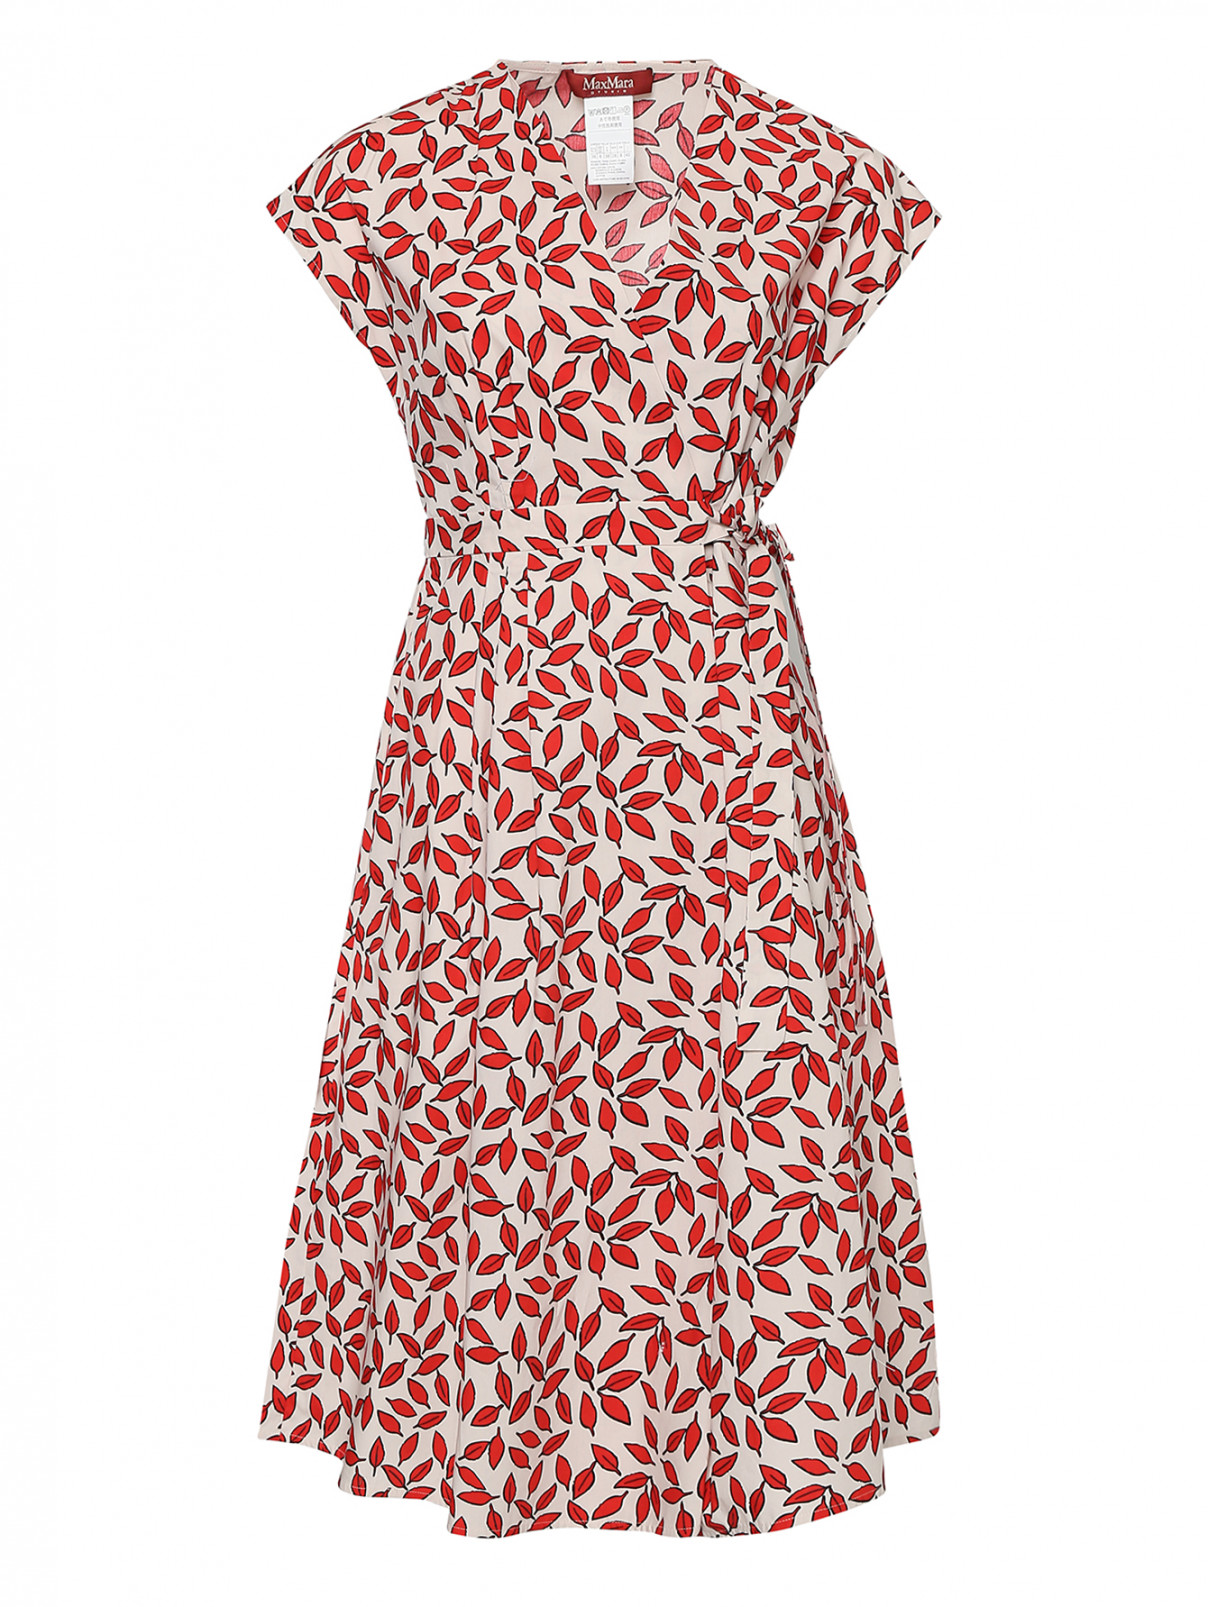 Платье из хлопка, со складками на талии Max Mara  –  Общий вид  – Цвет:  Мультиколор